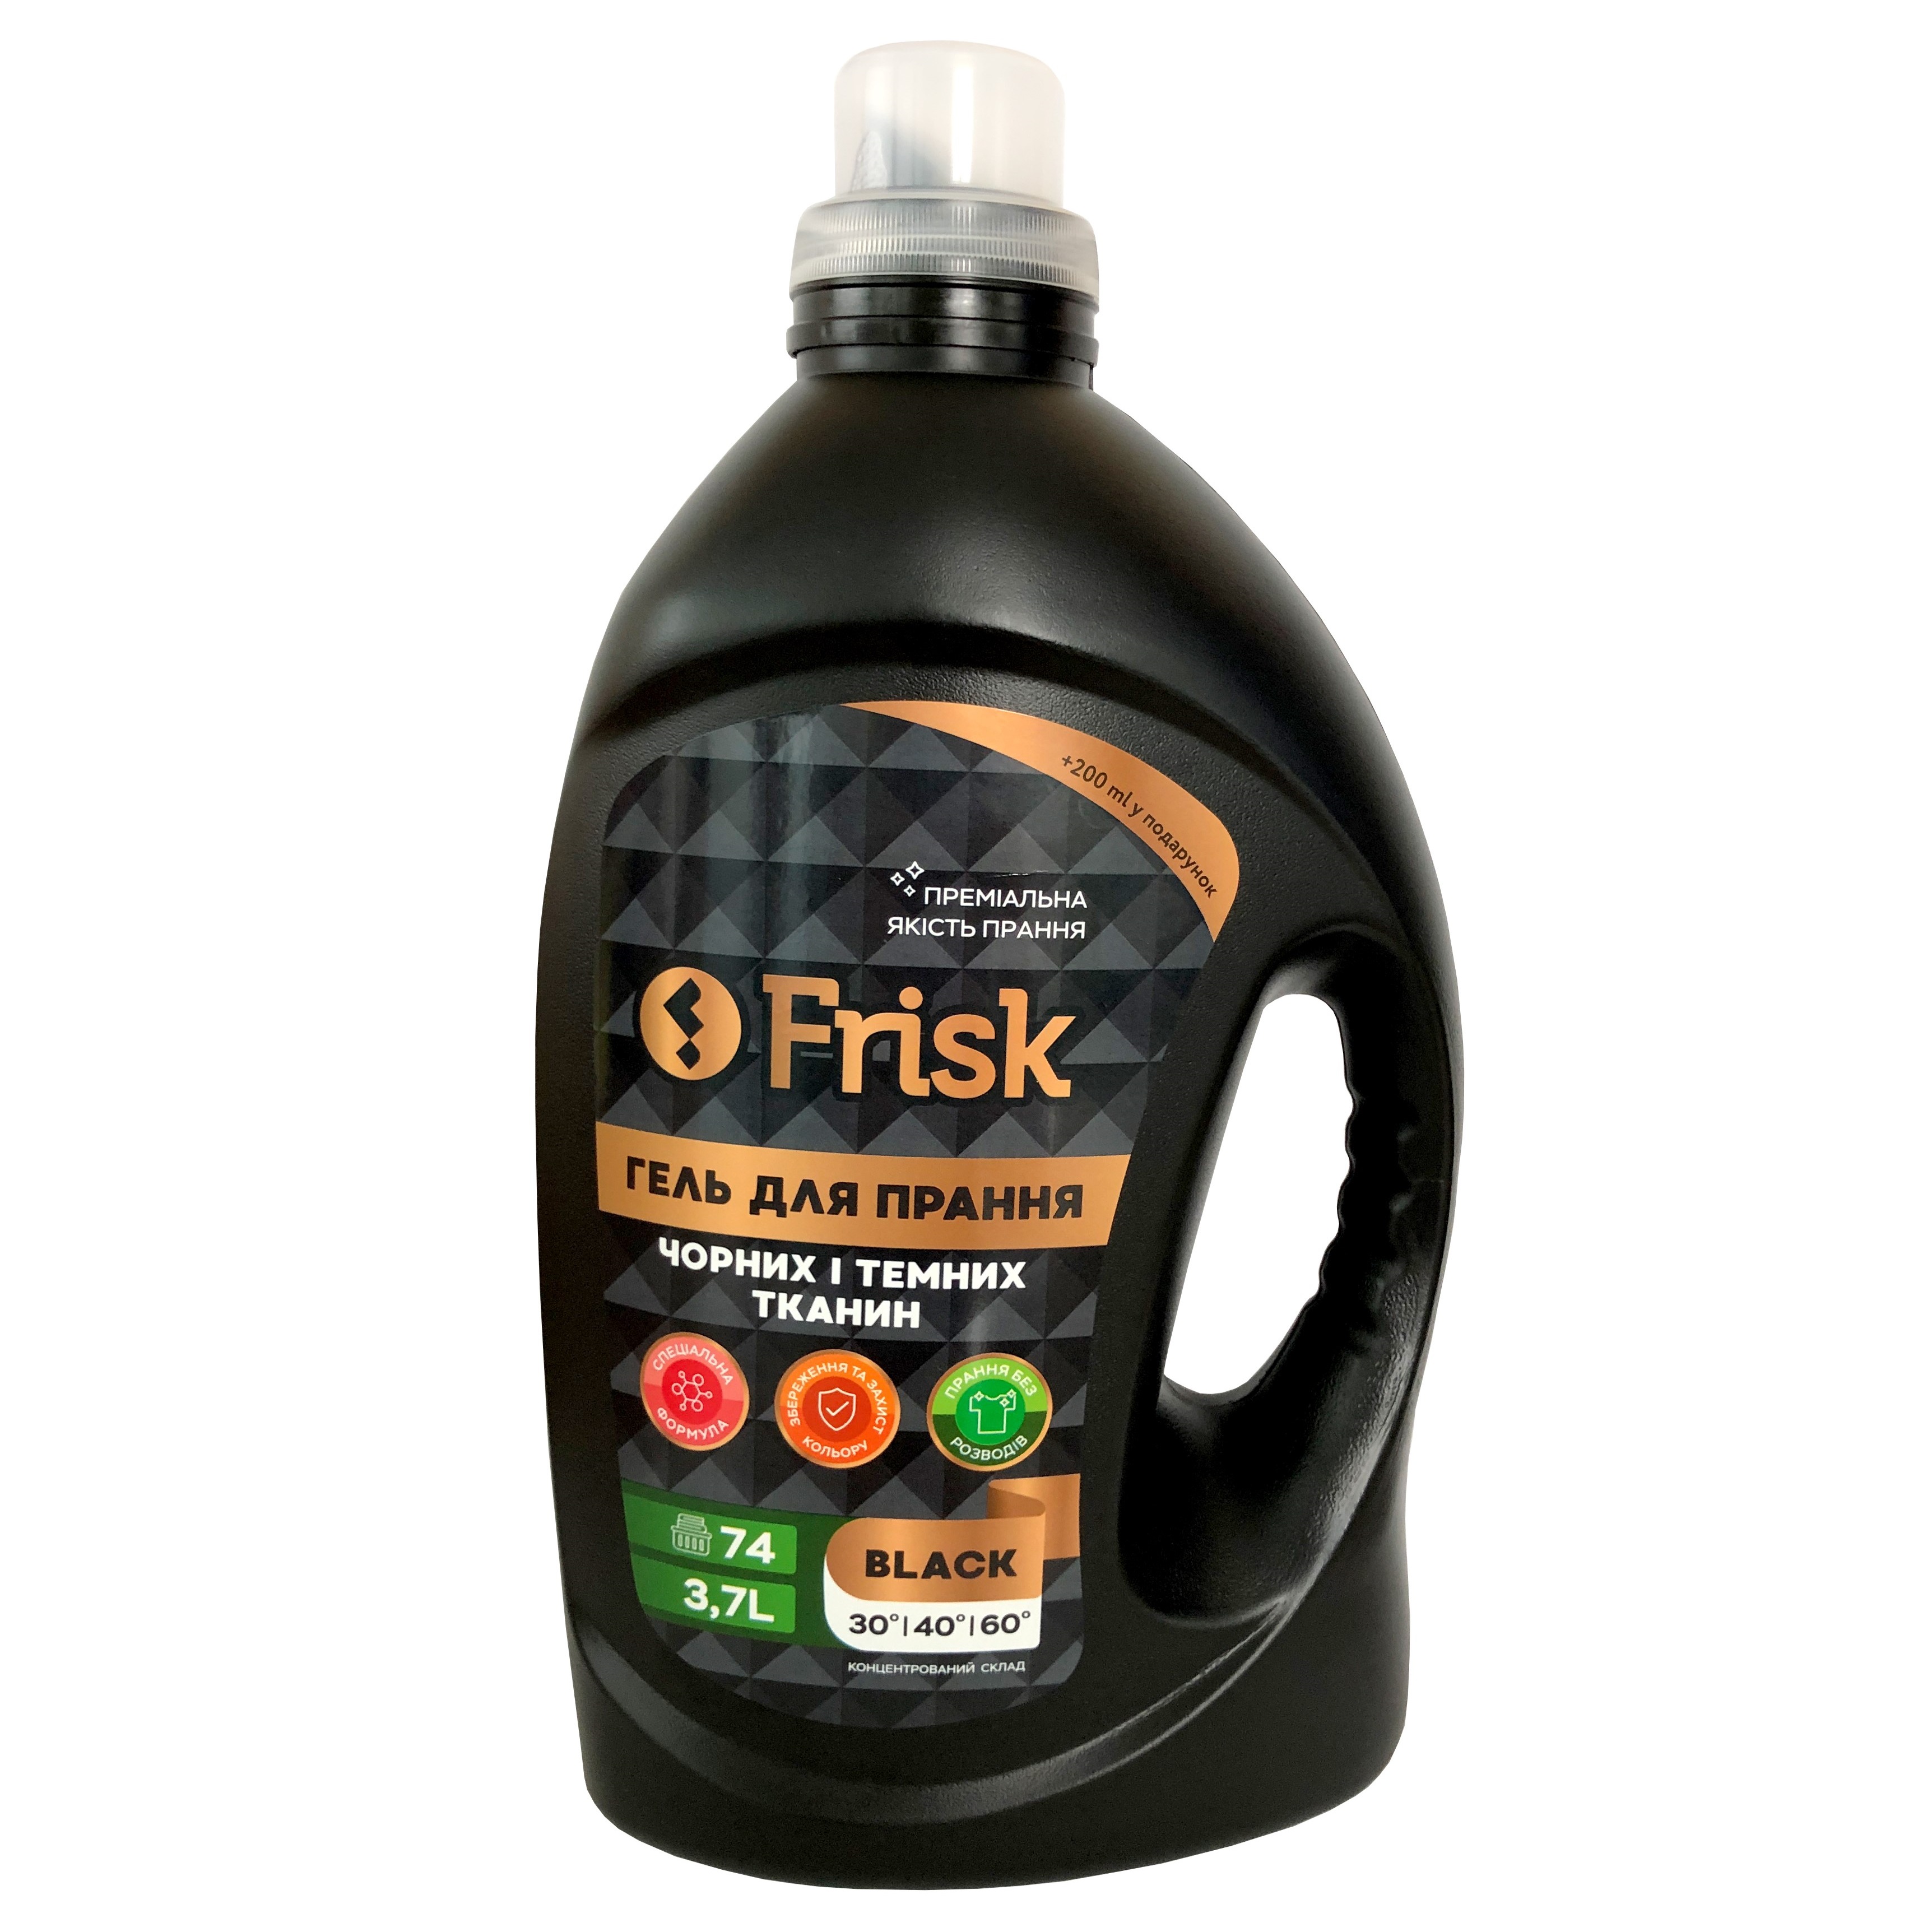 Гель для прання темних речей Frisk Black, 3,7 л (907879) - фото 1